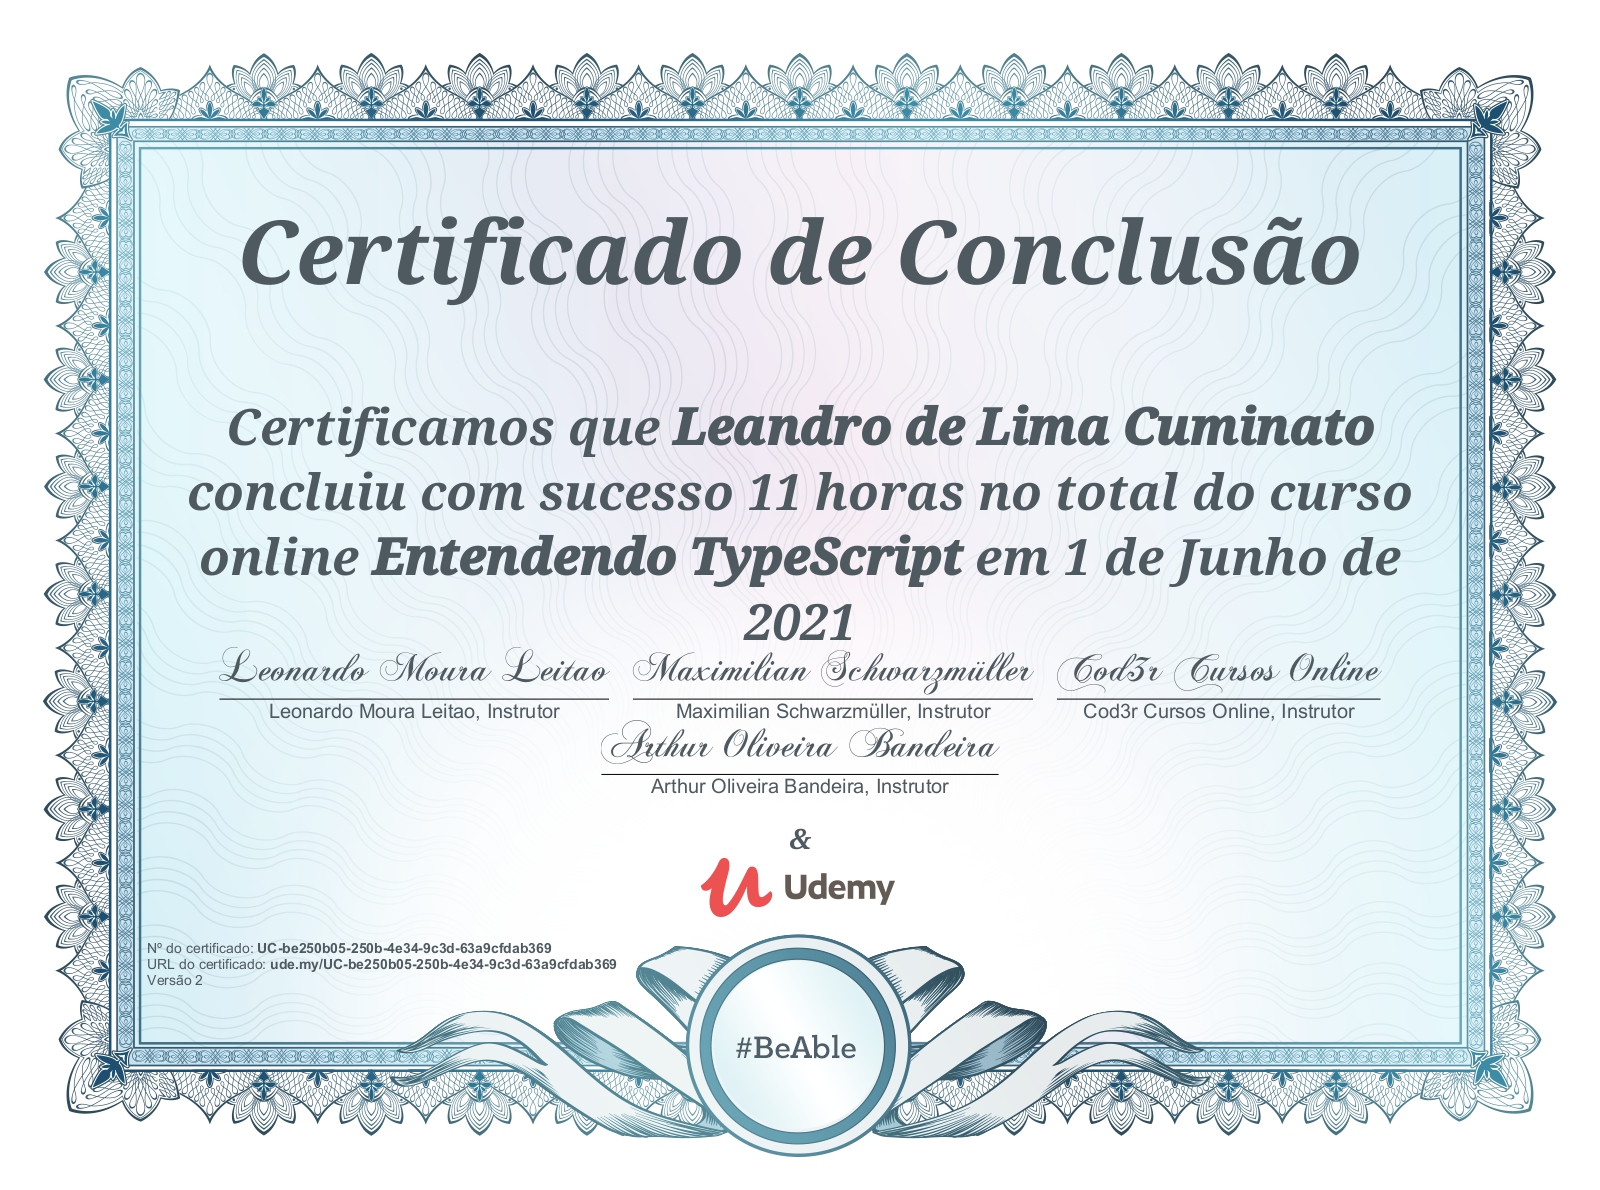 Certificado do curso de TypeScript realizado na Udemy com assinaturas dos instrutores